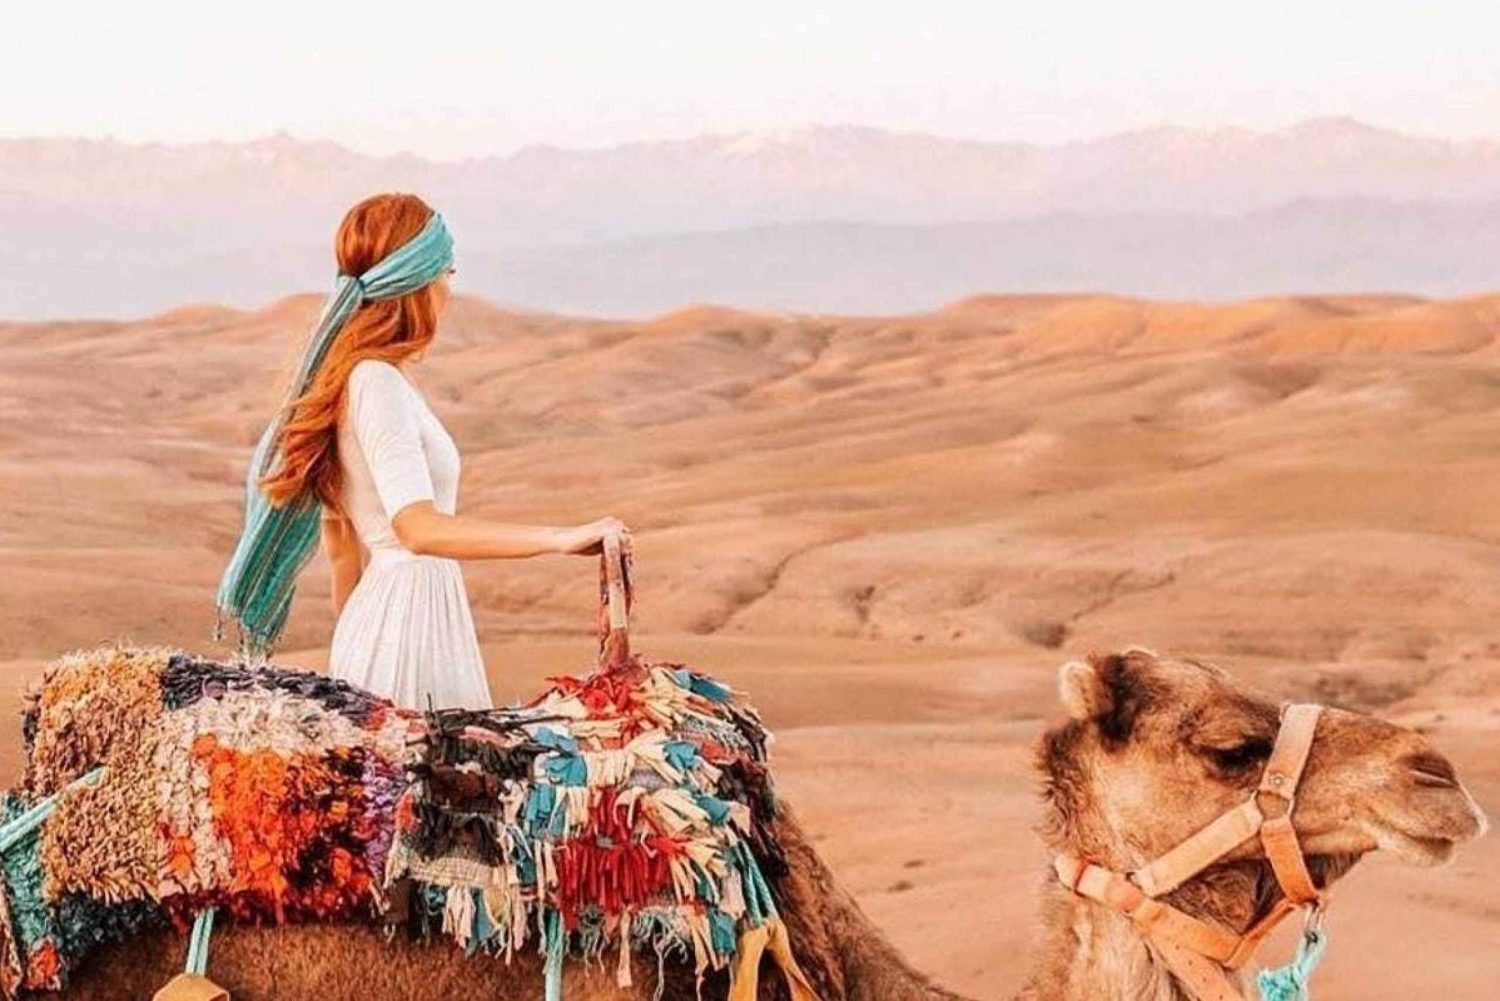 De Marrakech : Passeio de camelo ao pôr do sol no deserto de Agafay